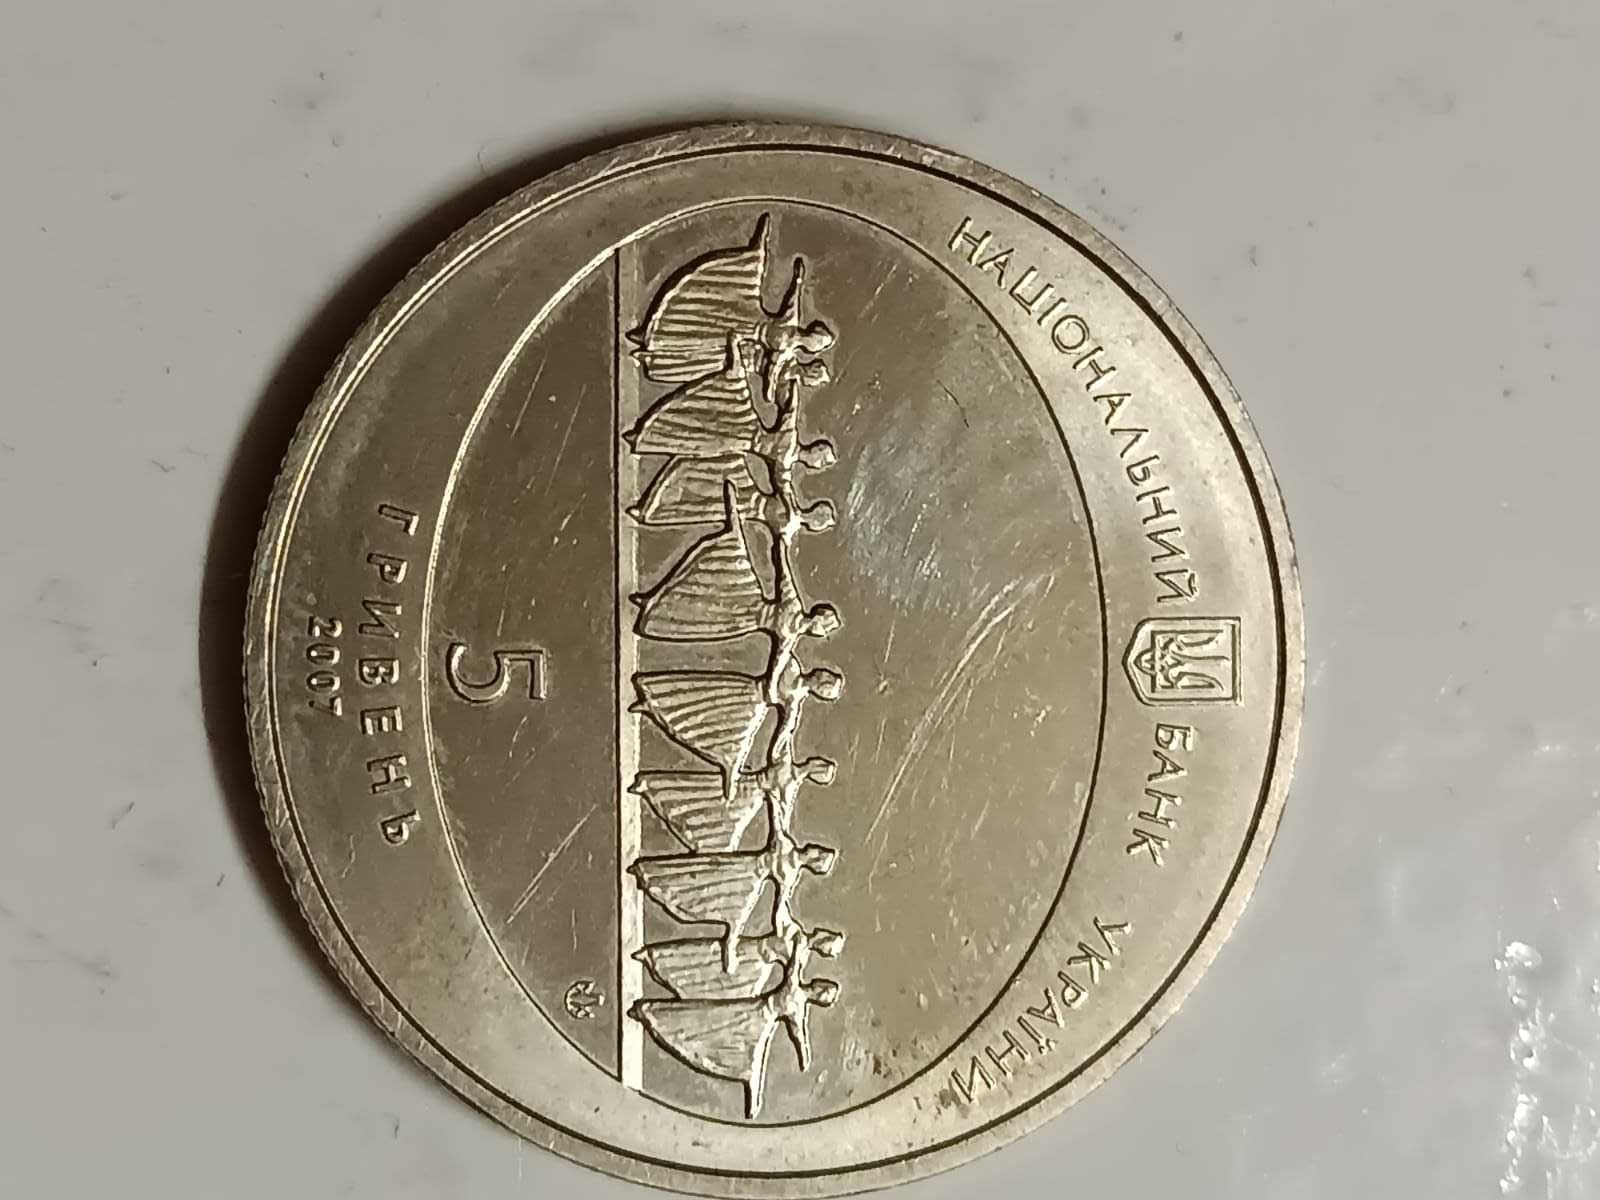 значки и монеты эпохи ссср коллекционная монета 5 гривень